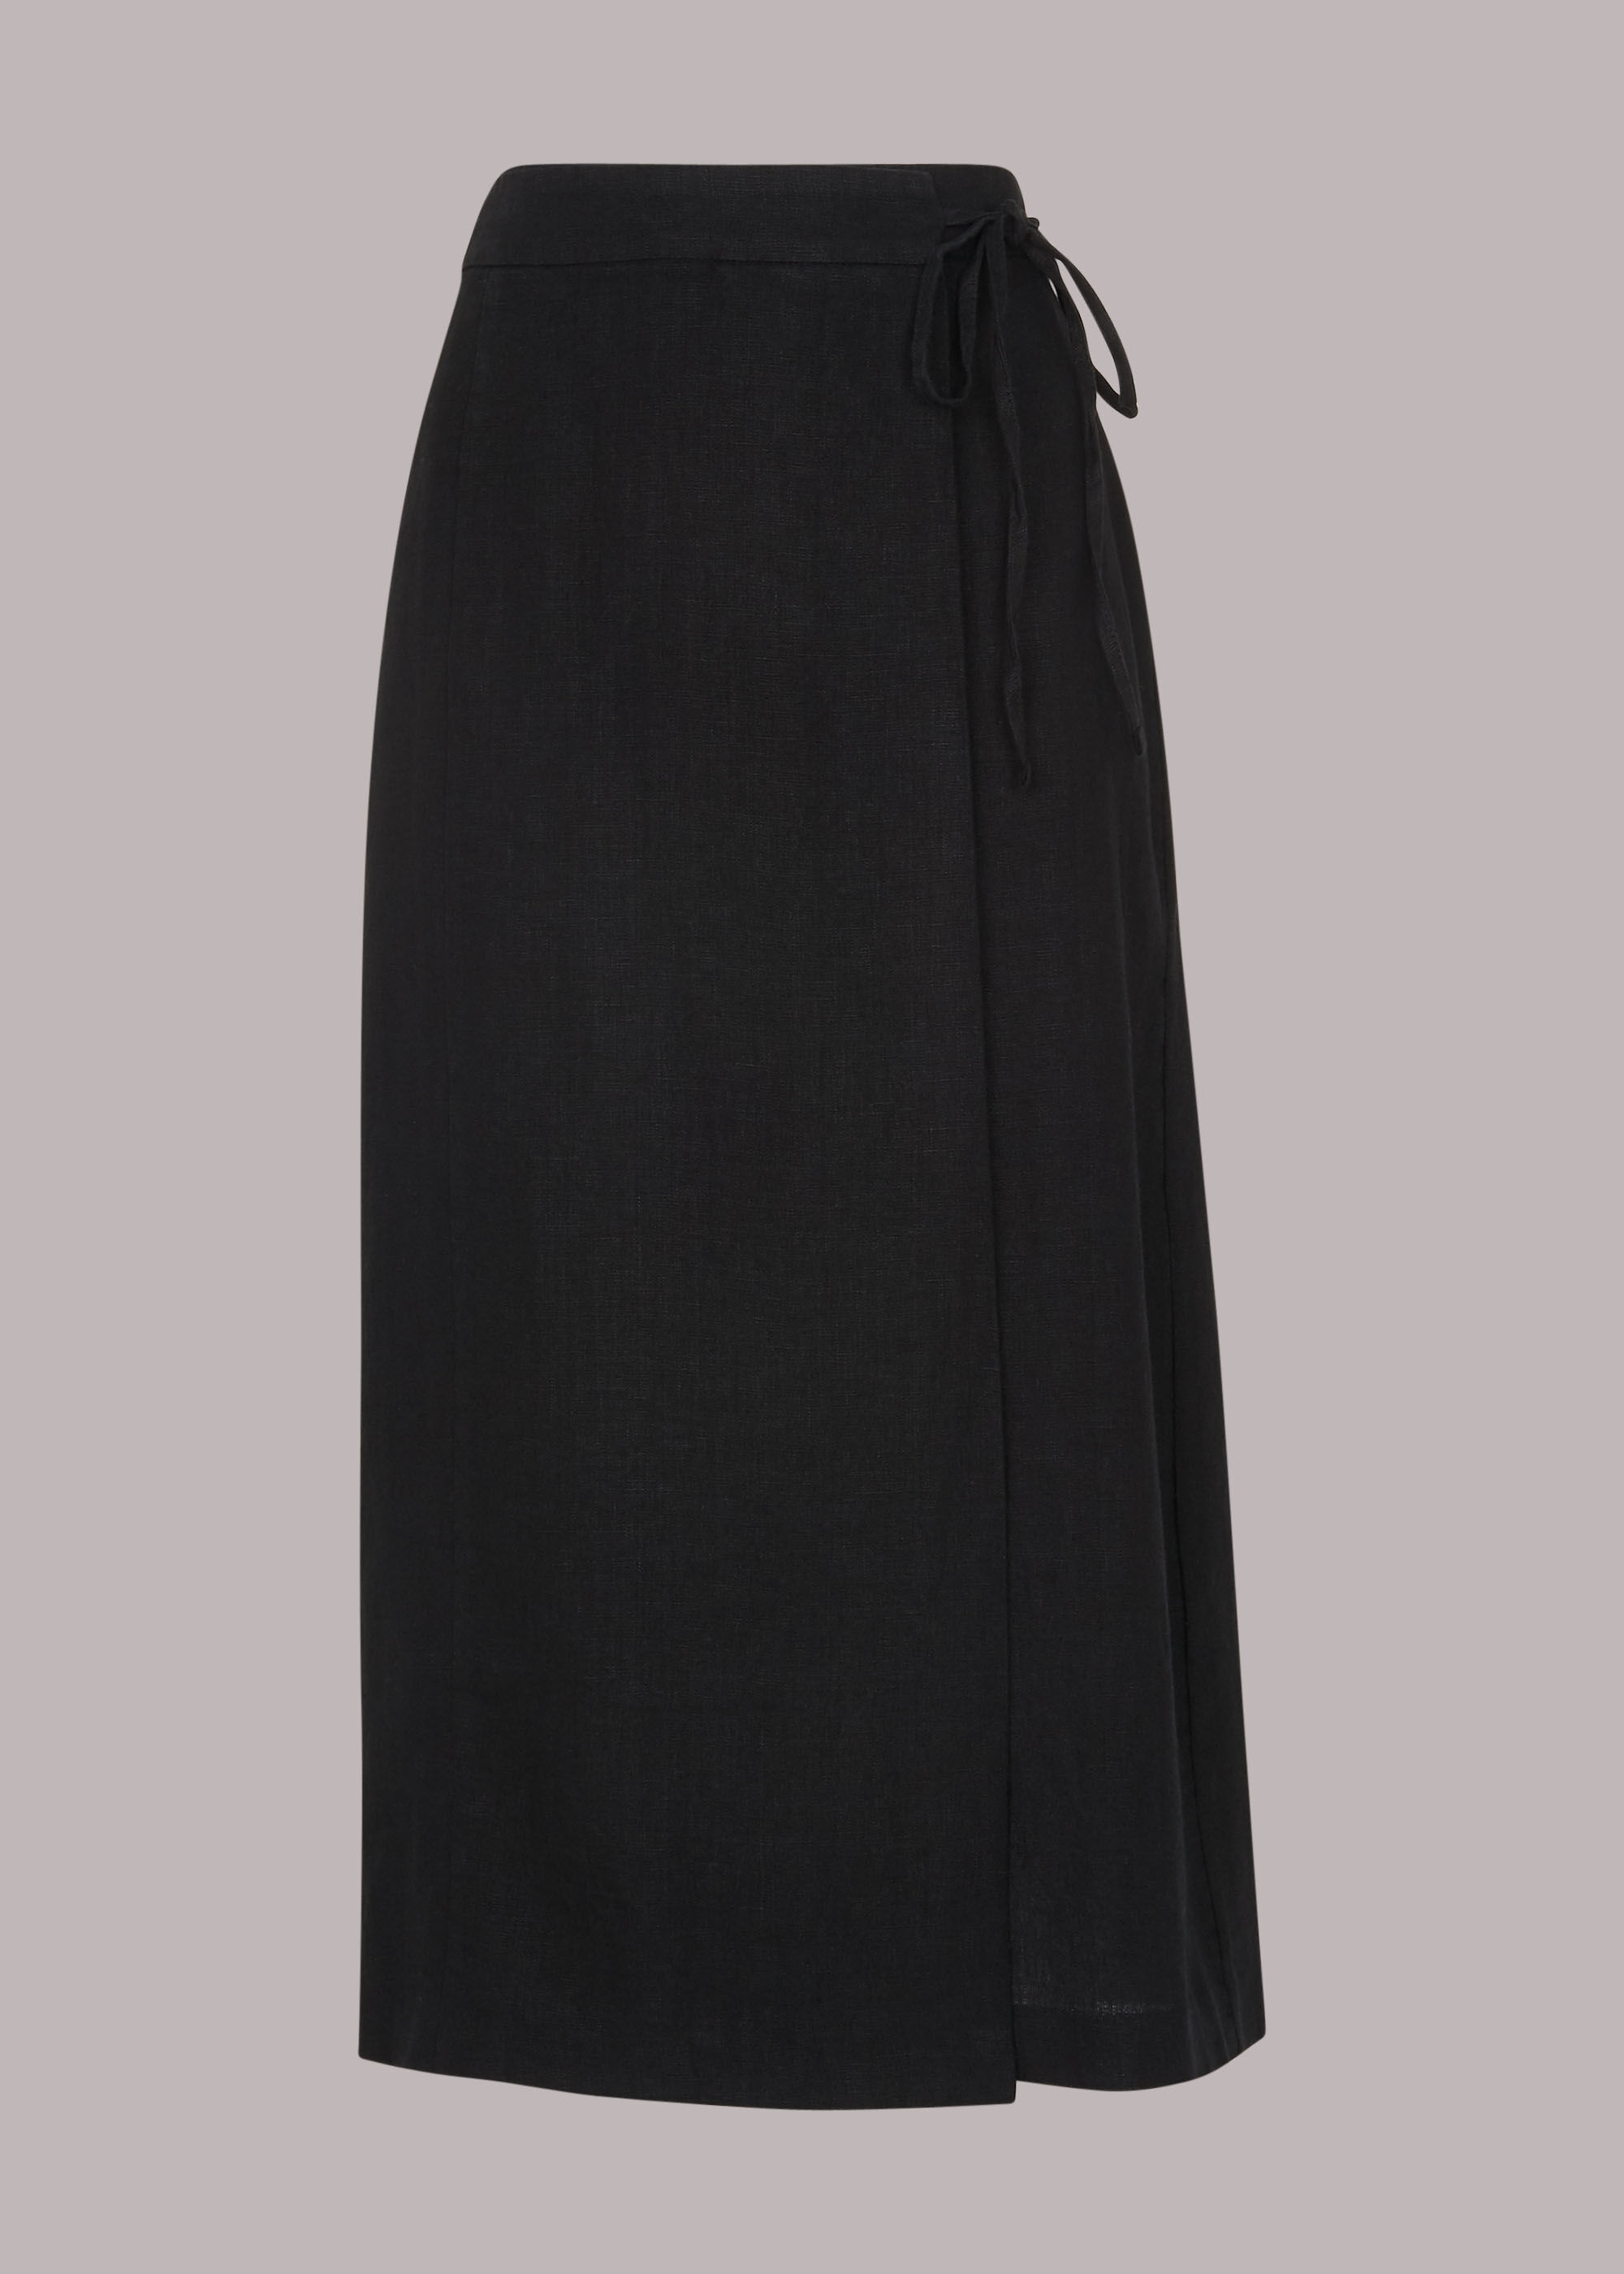 Black Wrap Detail Linen Skirt | WHISTLES |